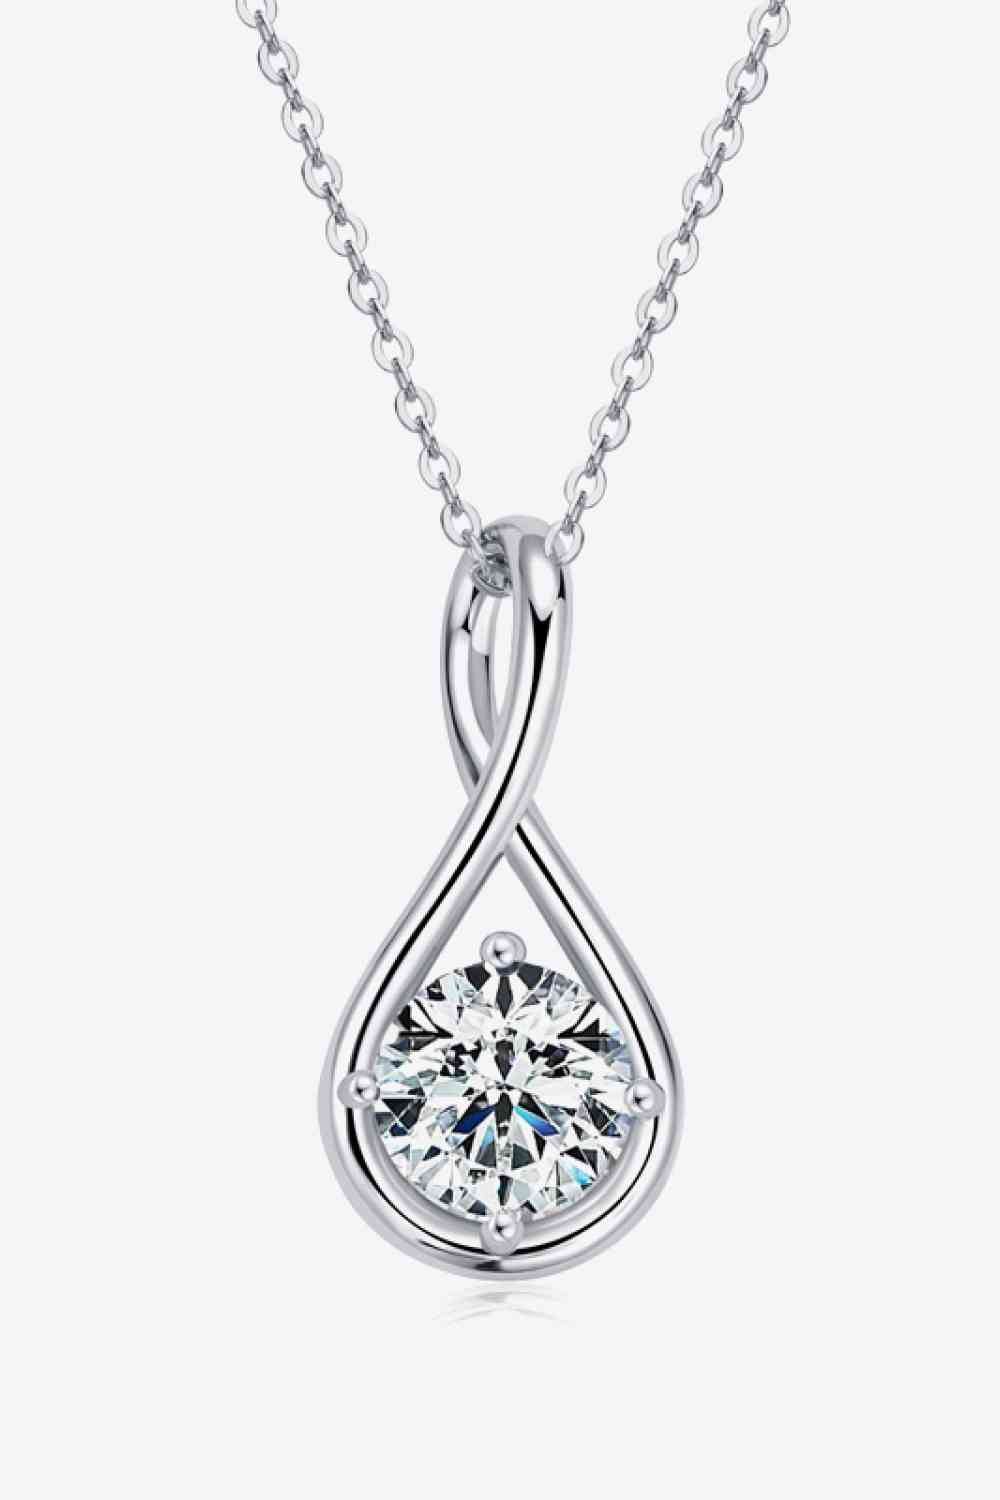 2 Carat Moissanite 925 Sterling Silver Necklace - Body By J'ne